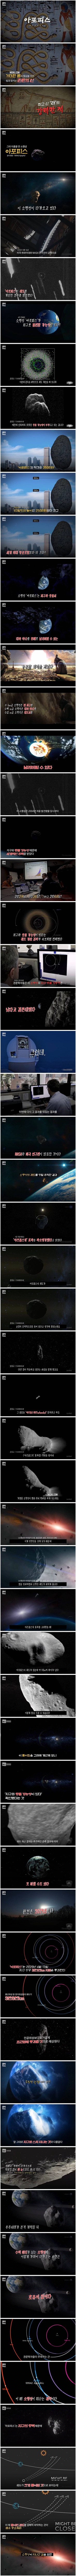 지구와 충돌할 확률이 높아졌다는 아포피스 소행성.jpg | 인스티즈